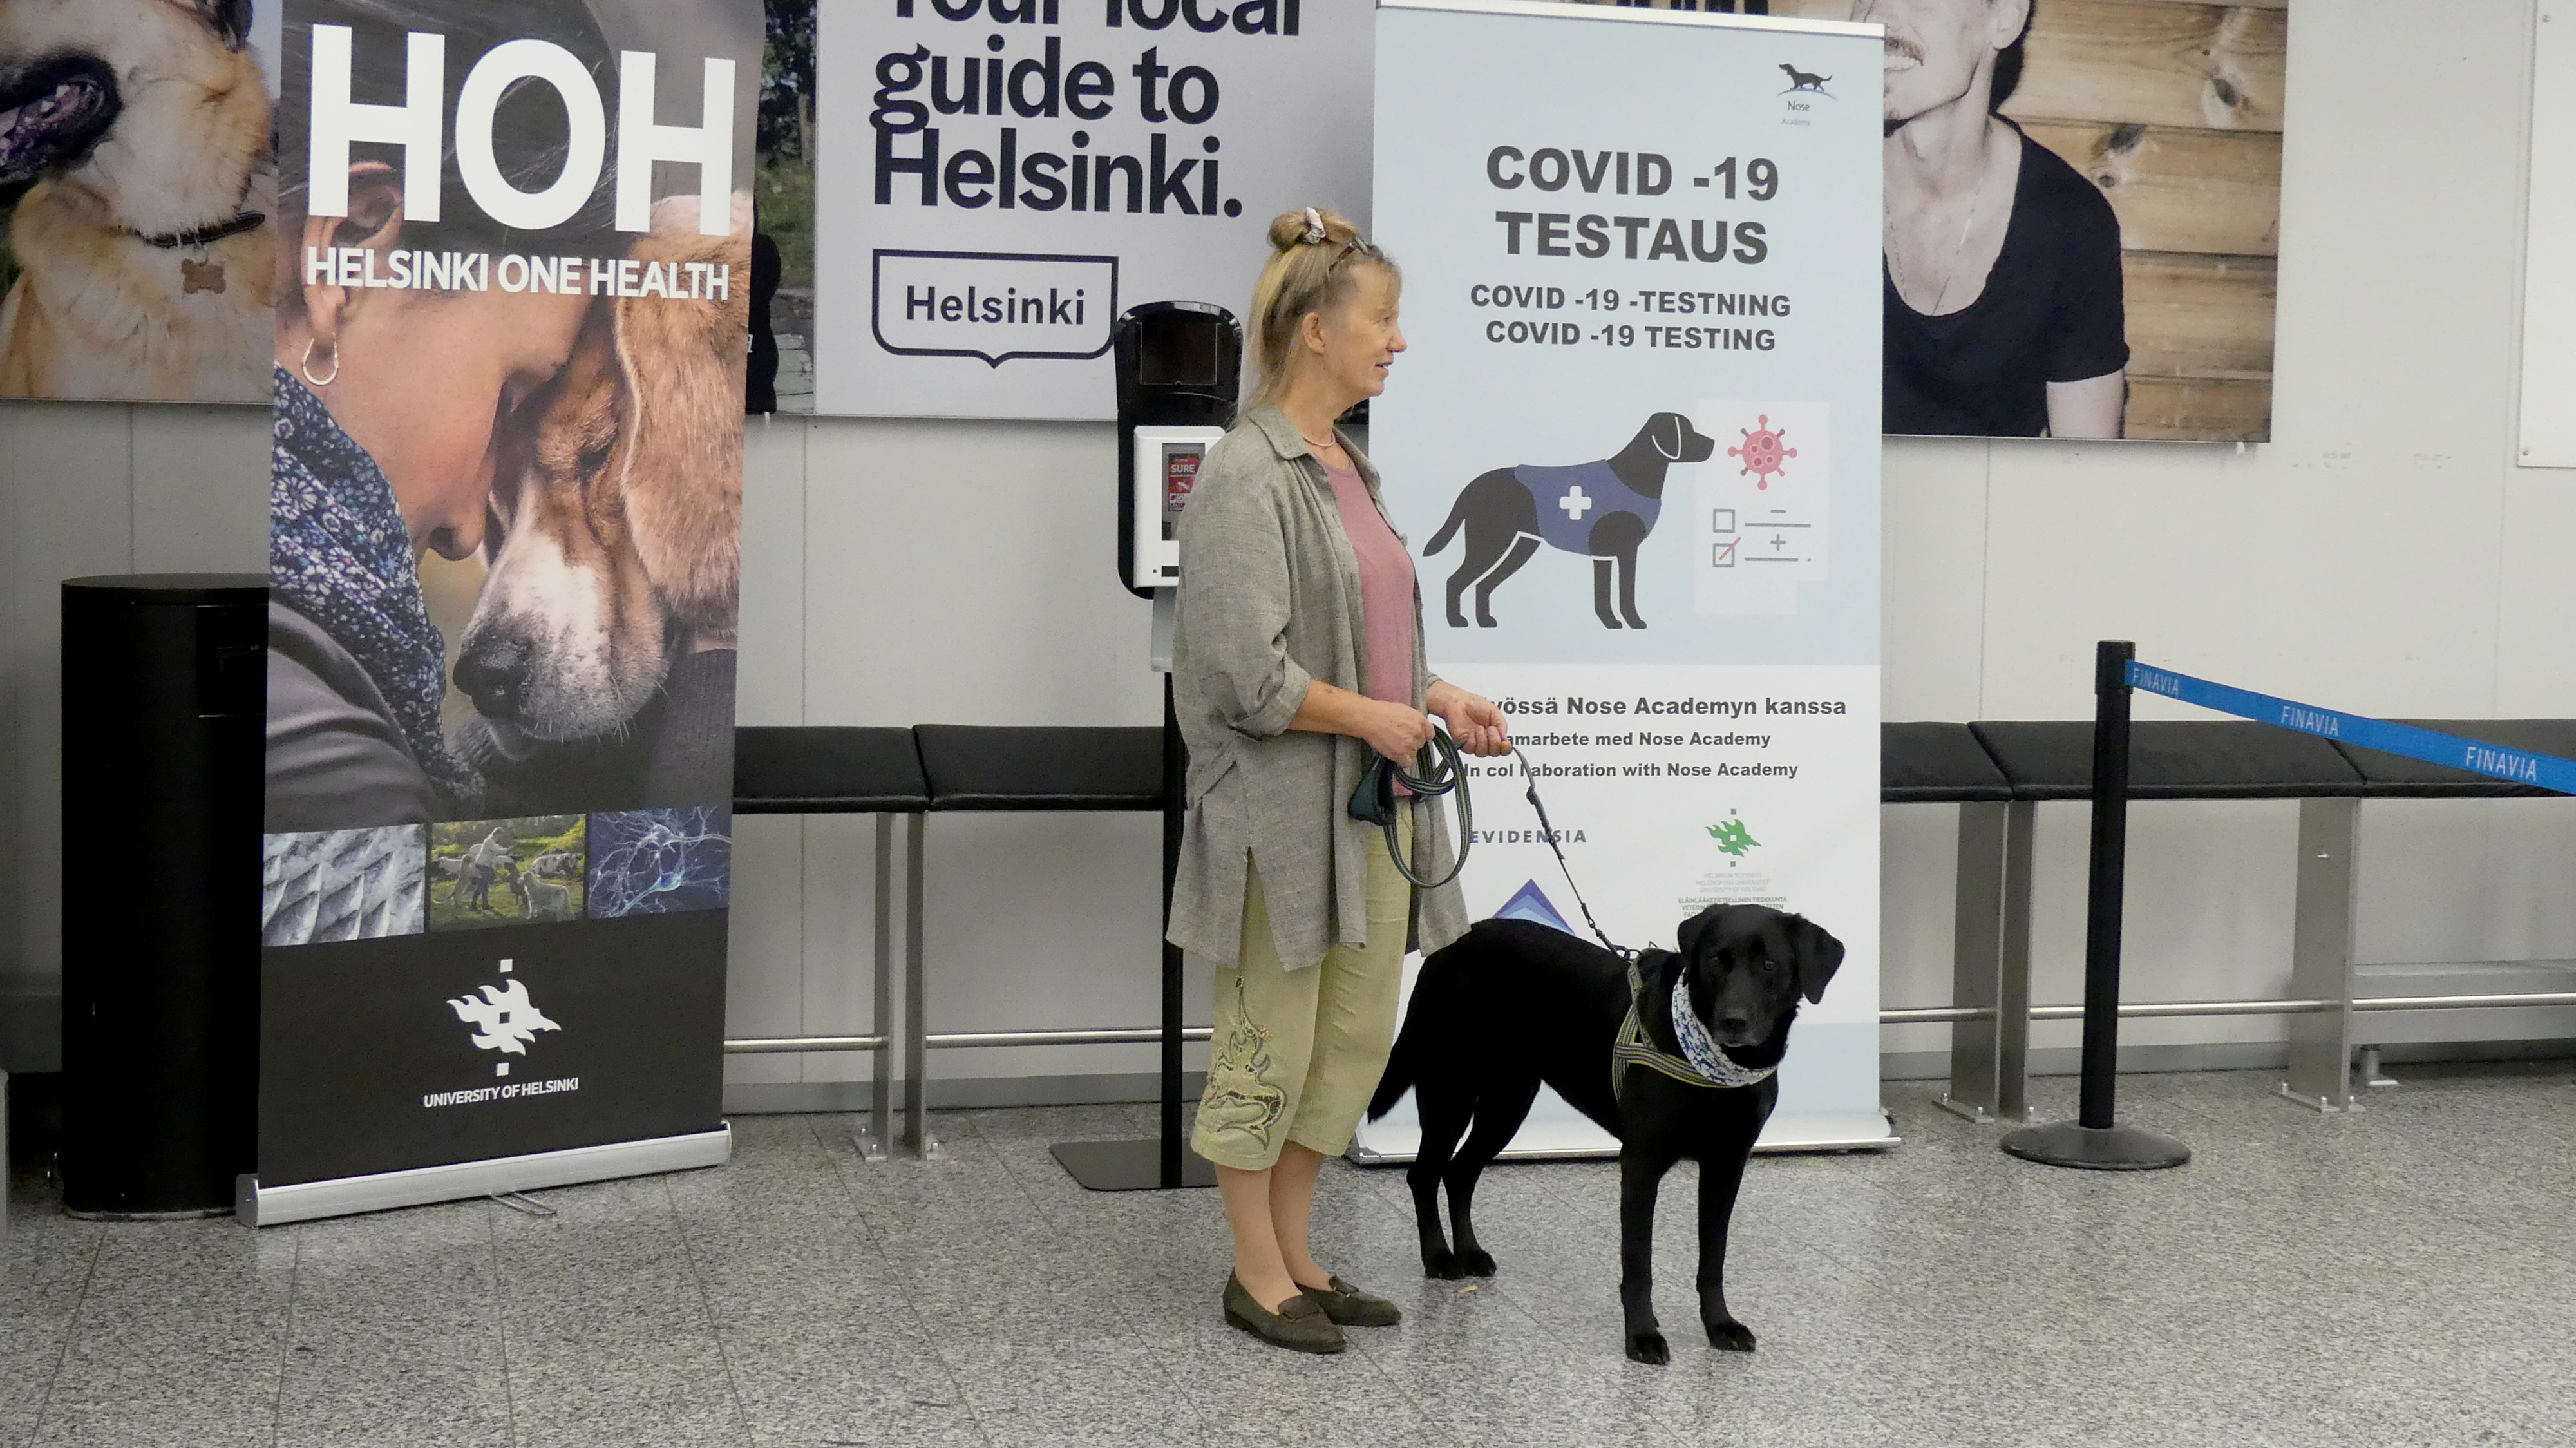 La entrenadora Susanna Paavilainen con el perro rastreador Miina, siendo entrenada para detectar el coronavirus de las muestras de los pasajeros que llegan, en el aeropuerto de Helsinki en Vantaa, Finlandia, el 22 de septiembre de 2020 (REUTERS/Attila Cser)